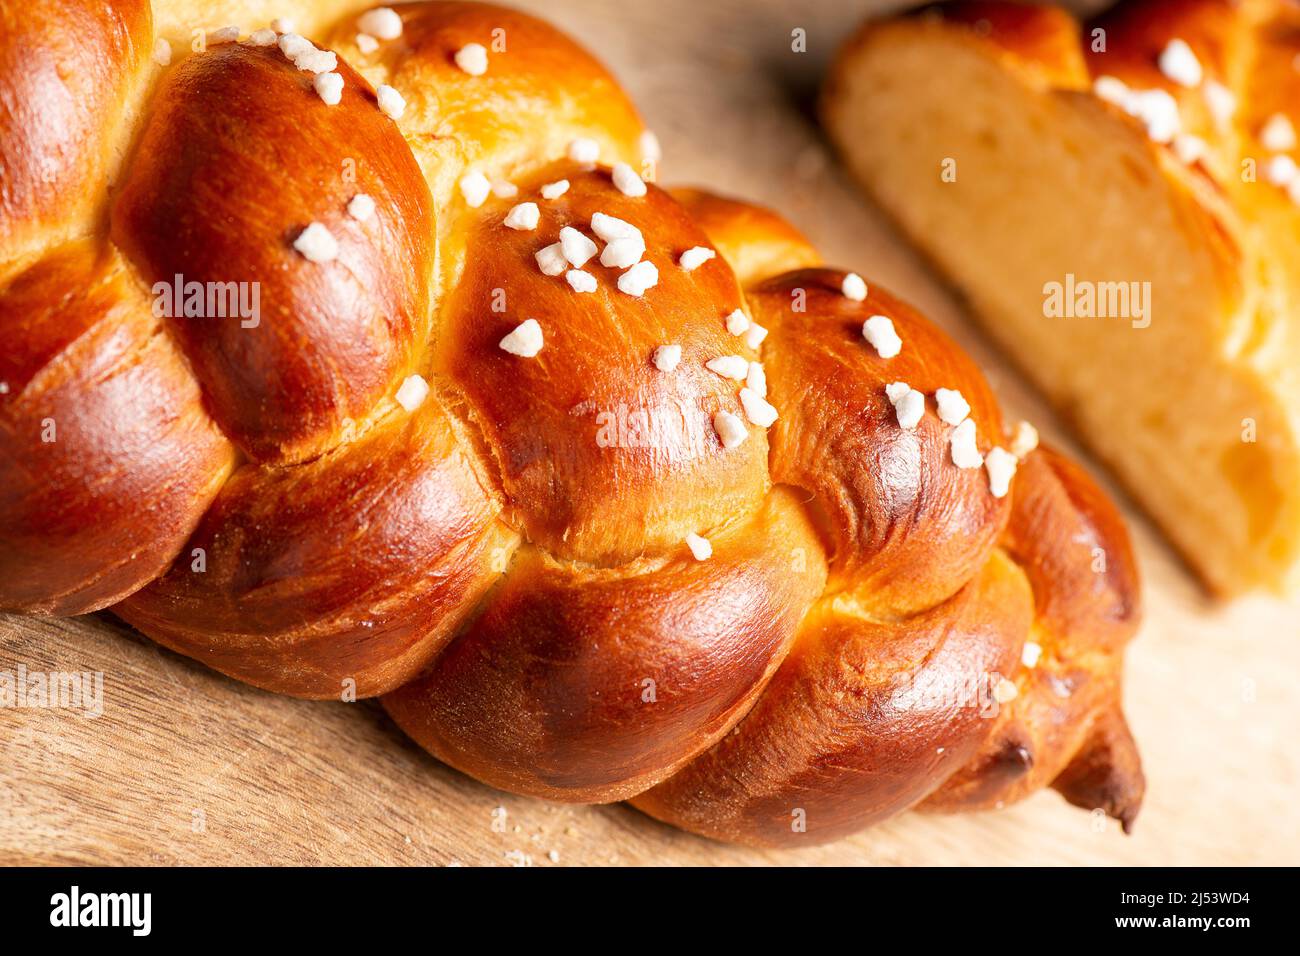 Schönes, goldenes gebackenes Brot mit drei Zopf und Hagel-Zucker. Challah ist ein besonderes Brot aschkenasischer jüdischer Herkunft, in der Regel geflochten und typi Stockfoto